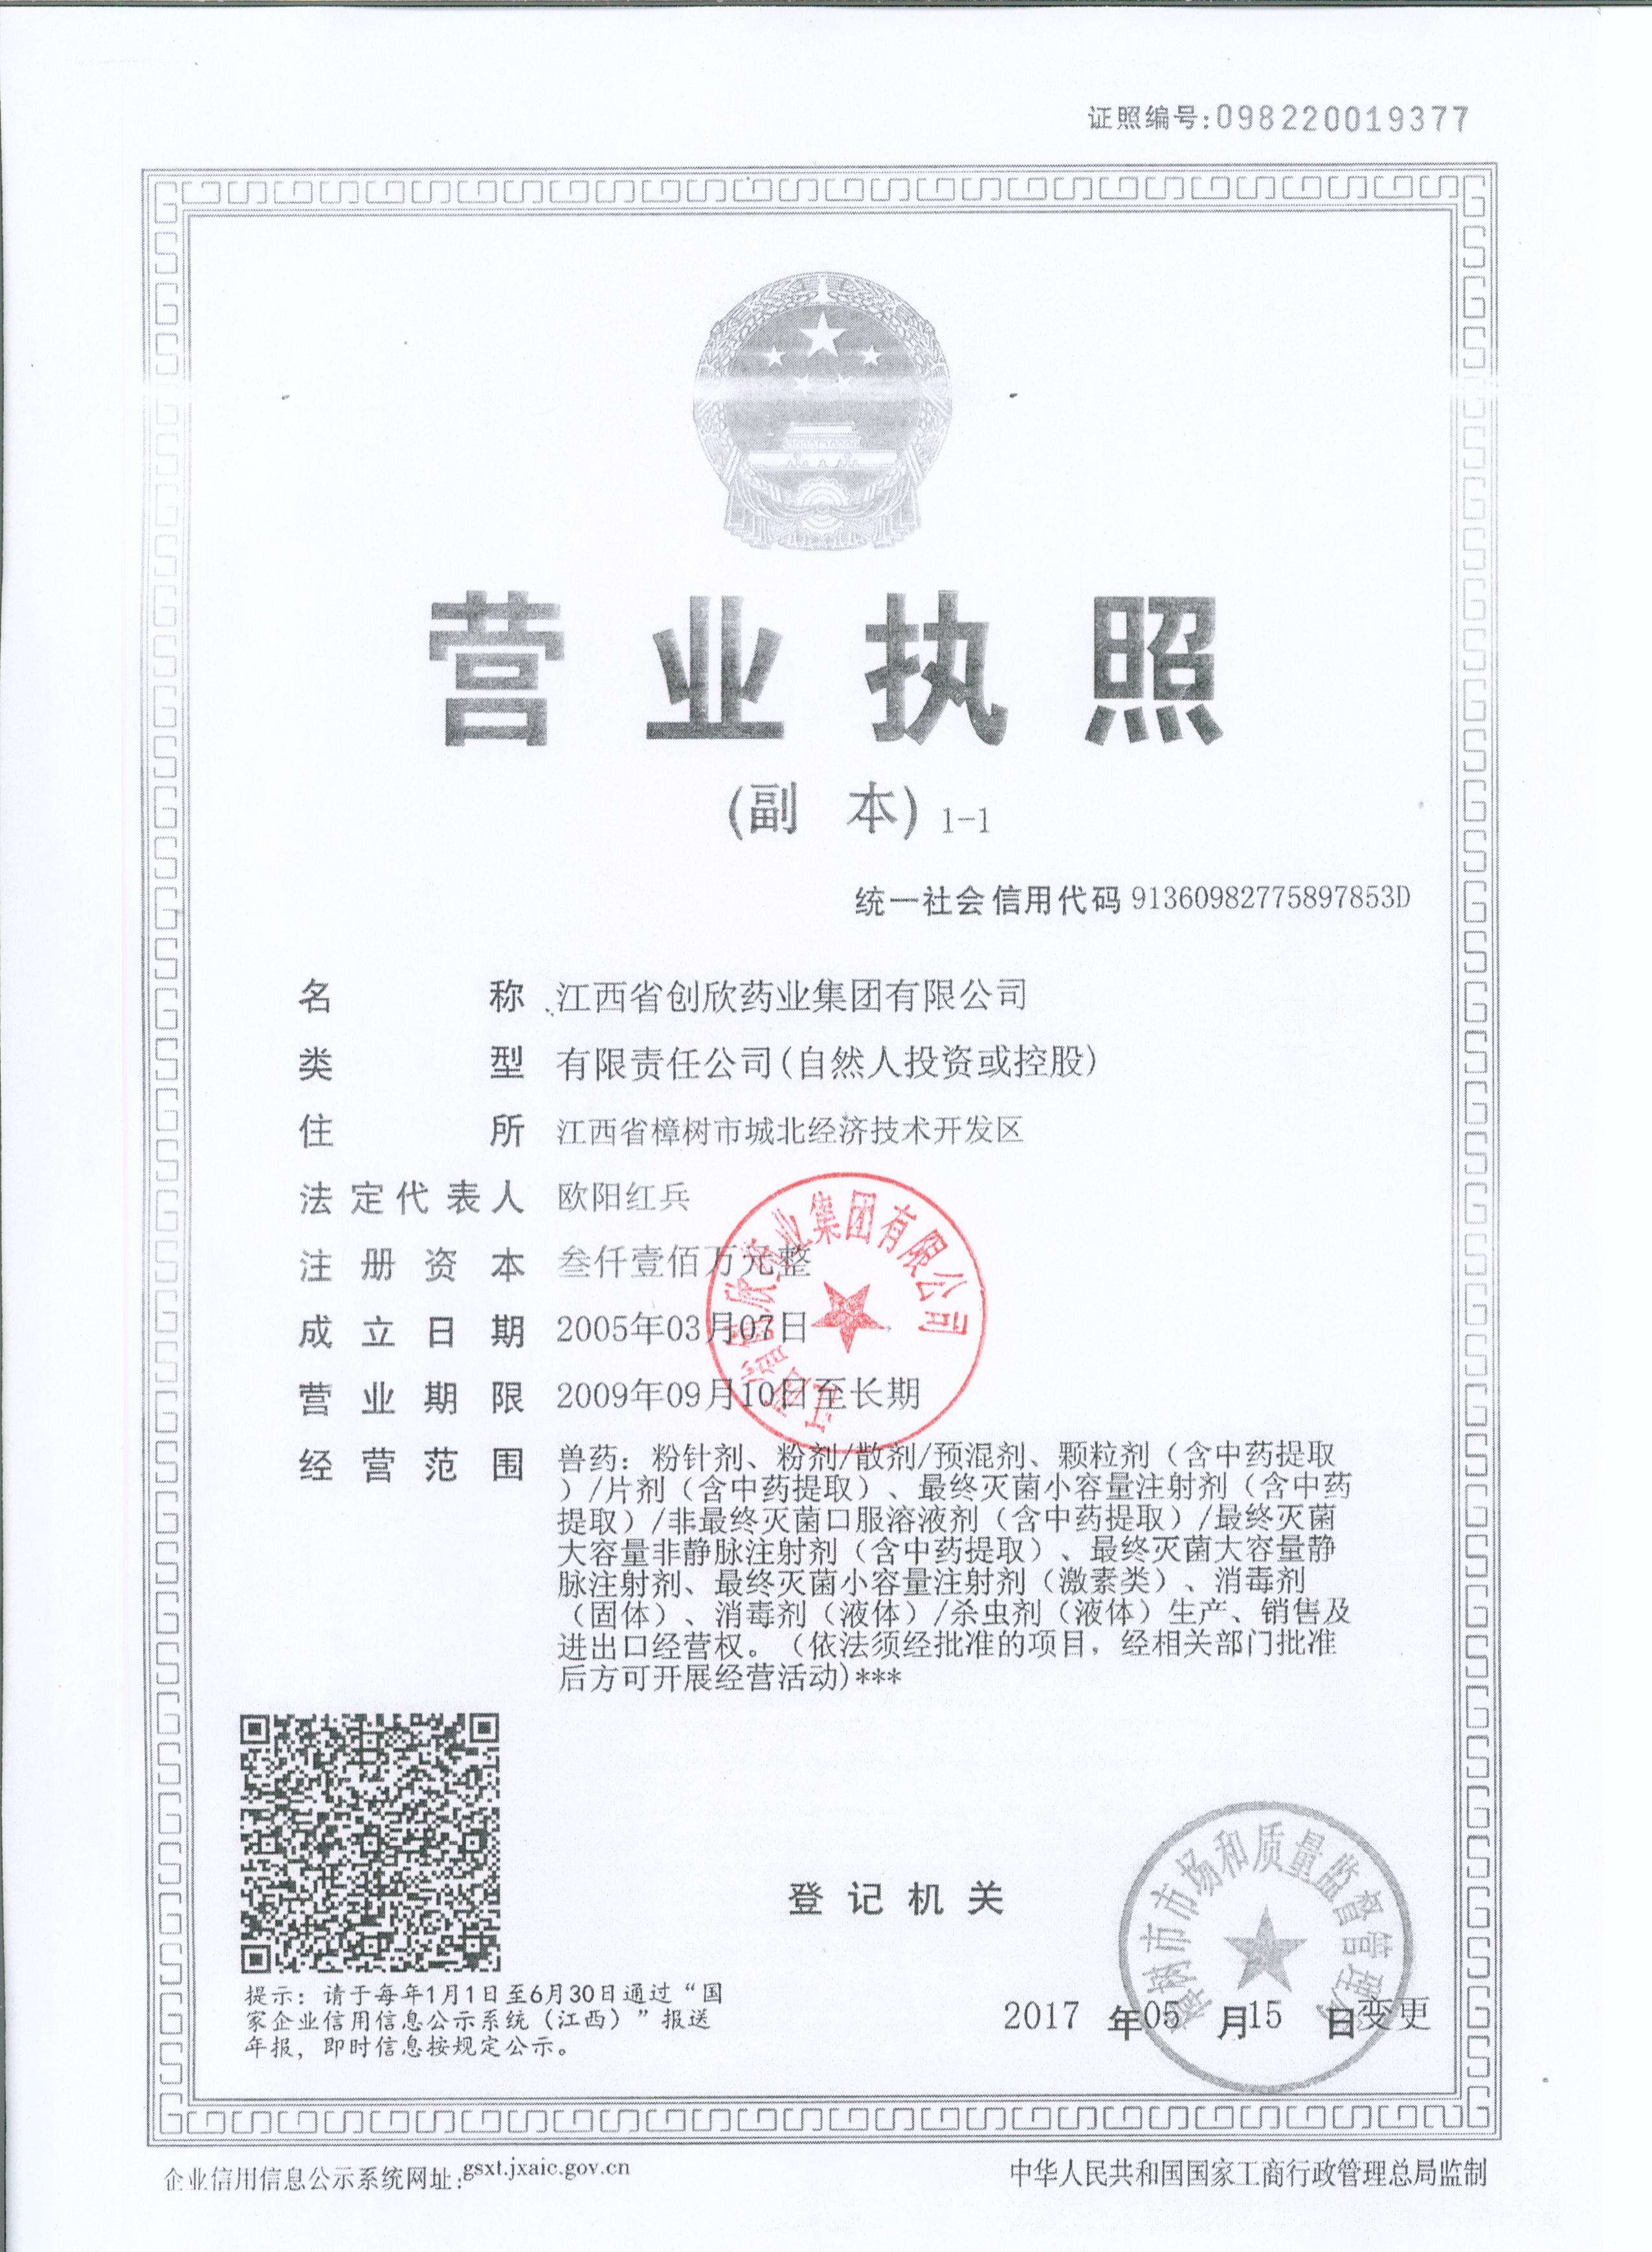 Jiangxi Chuangxin Pharmaceutical Group Co. LTD